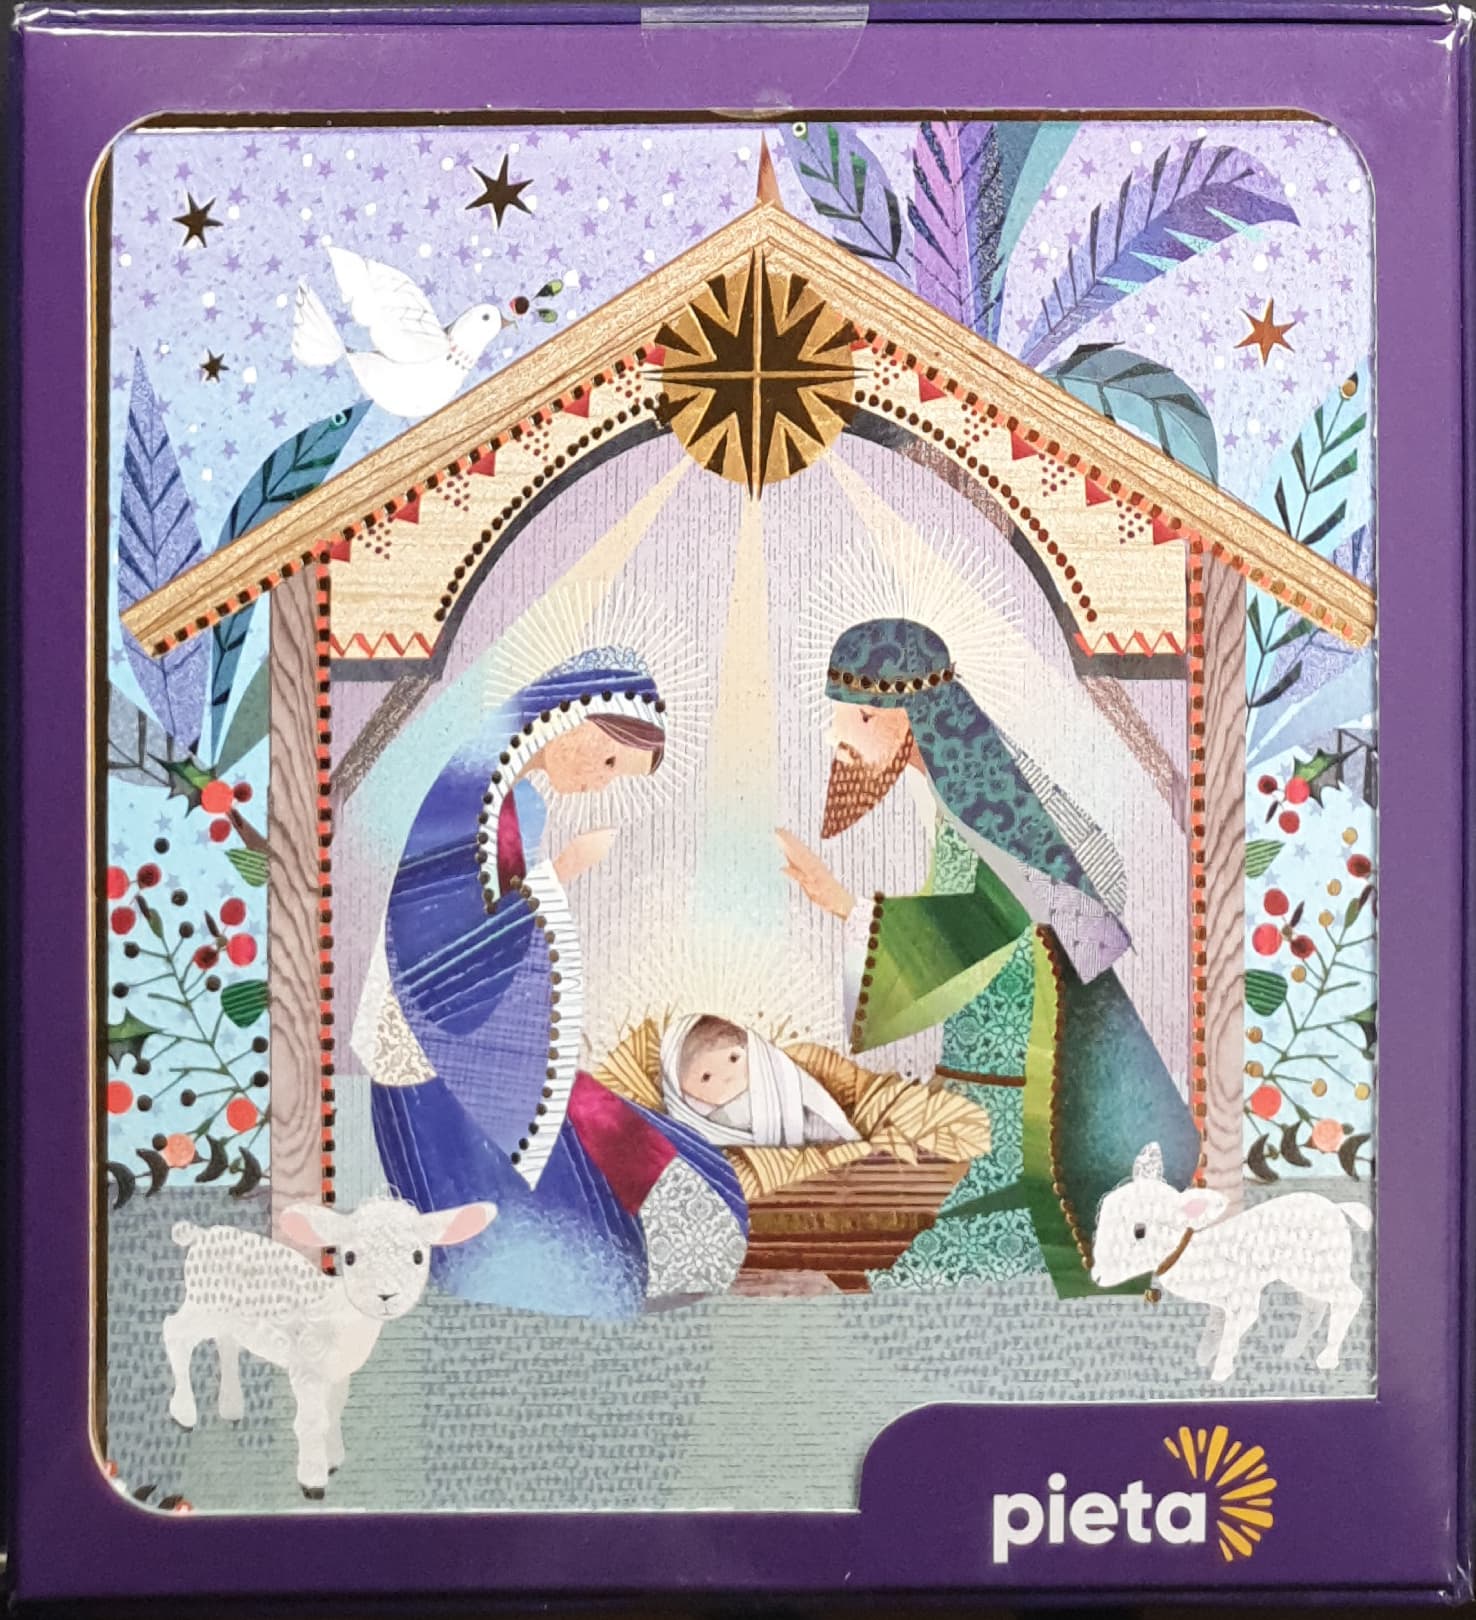 Charity Christmas Card (In Irish & English) - Box of 16 / Pieta - Joseph & Mary & Baby Jesus